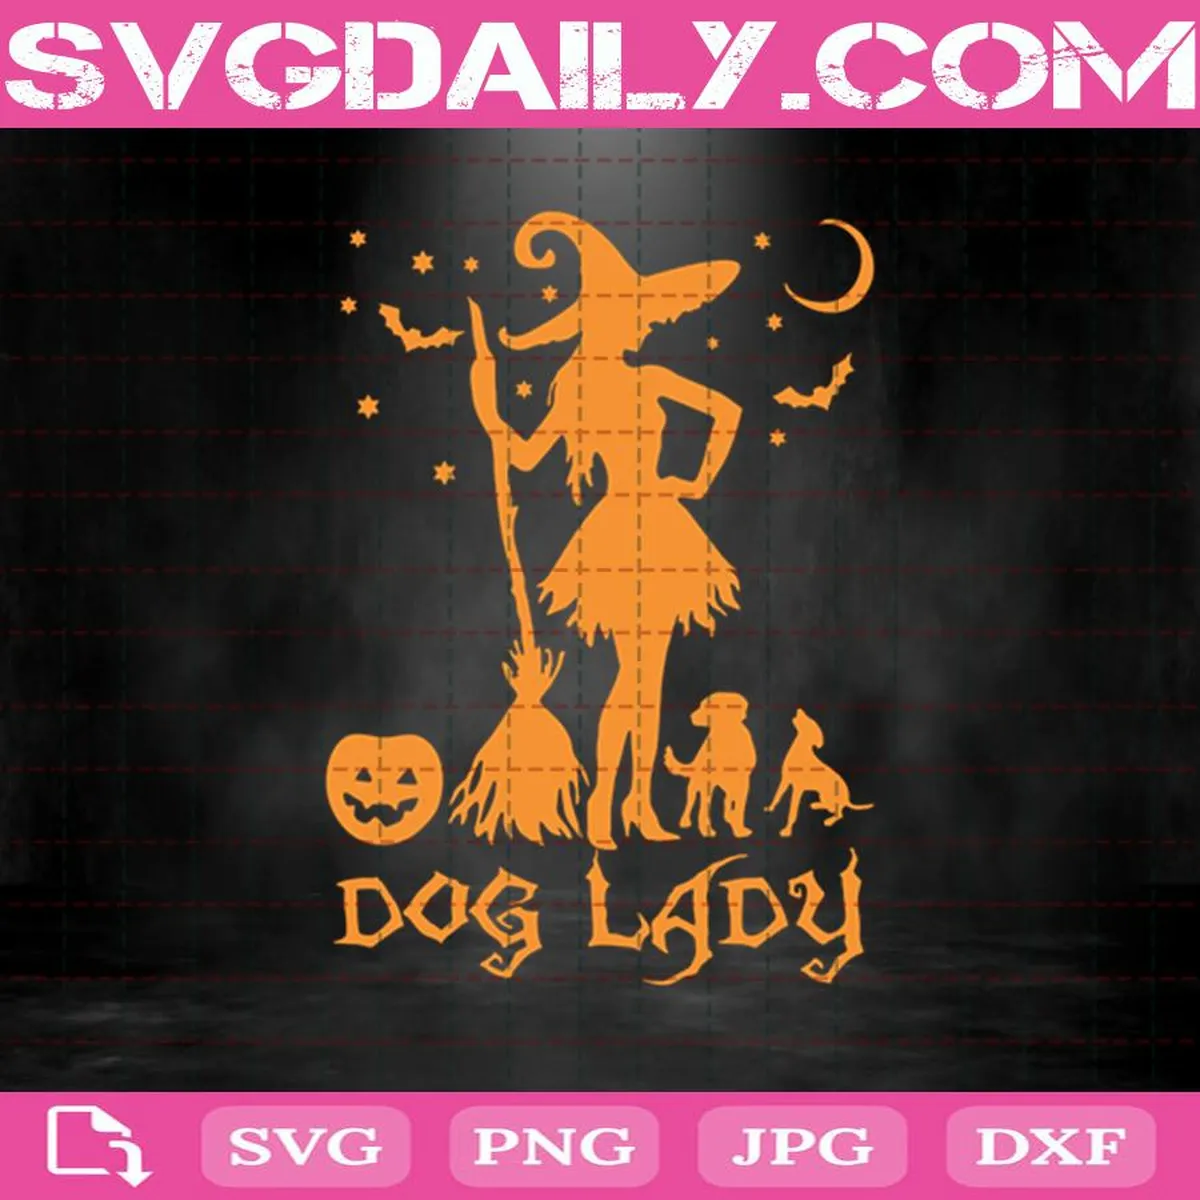 Dog Lady Svg, Dog Svg, Witch Svg, Pumpkin Svg, Halloween Svg, Witch Lady Svg, Girl Svg, Svg Png Dxf Eps